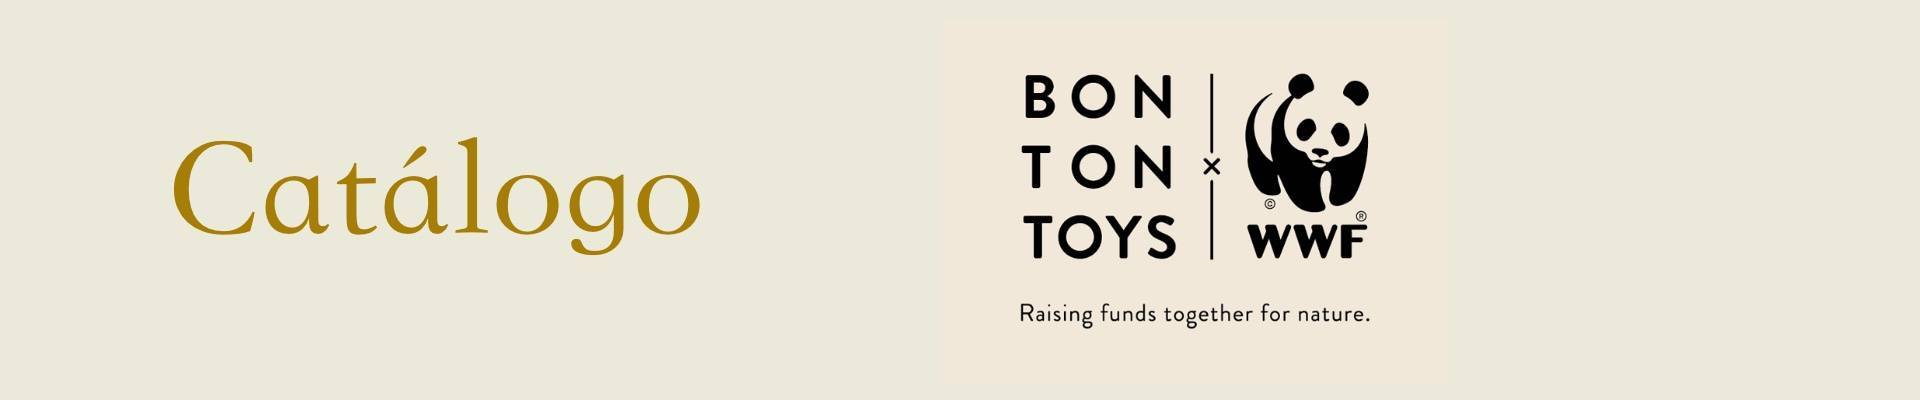 Comprar juguetes educativos para niños de la marca BON TON TOYS-WWF